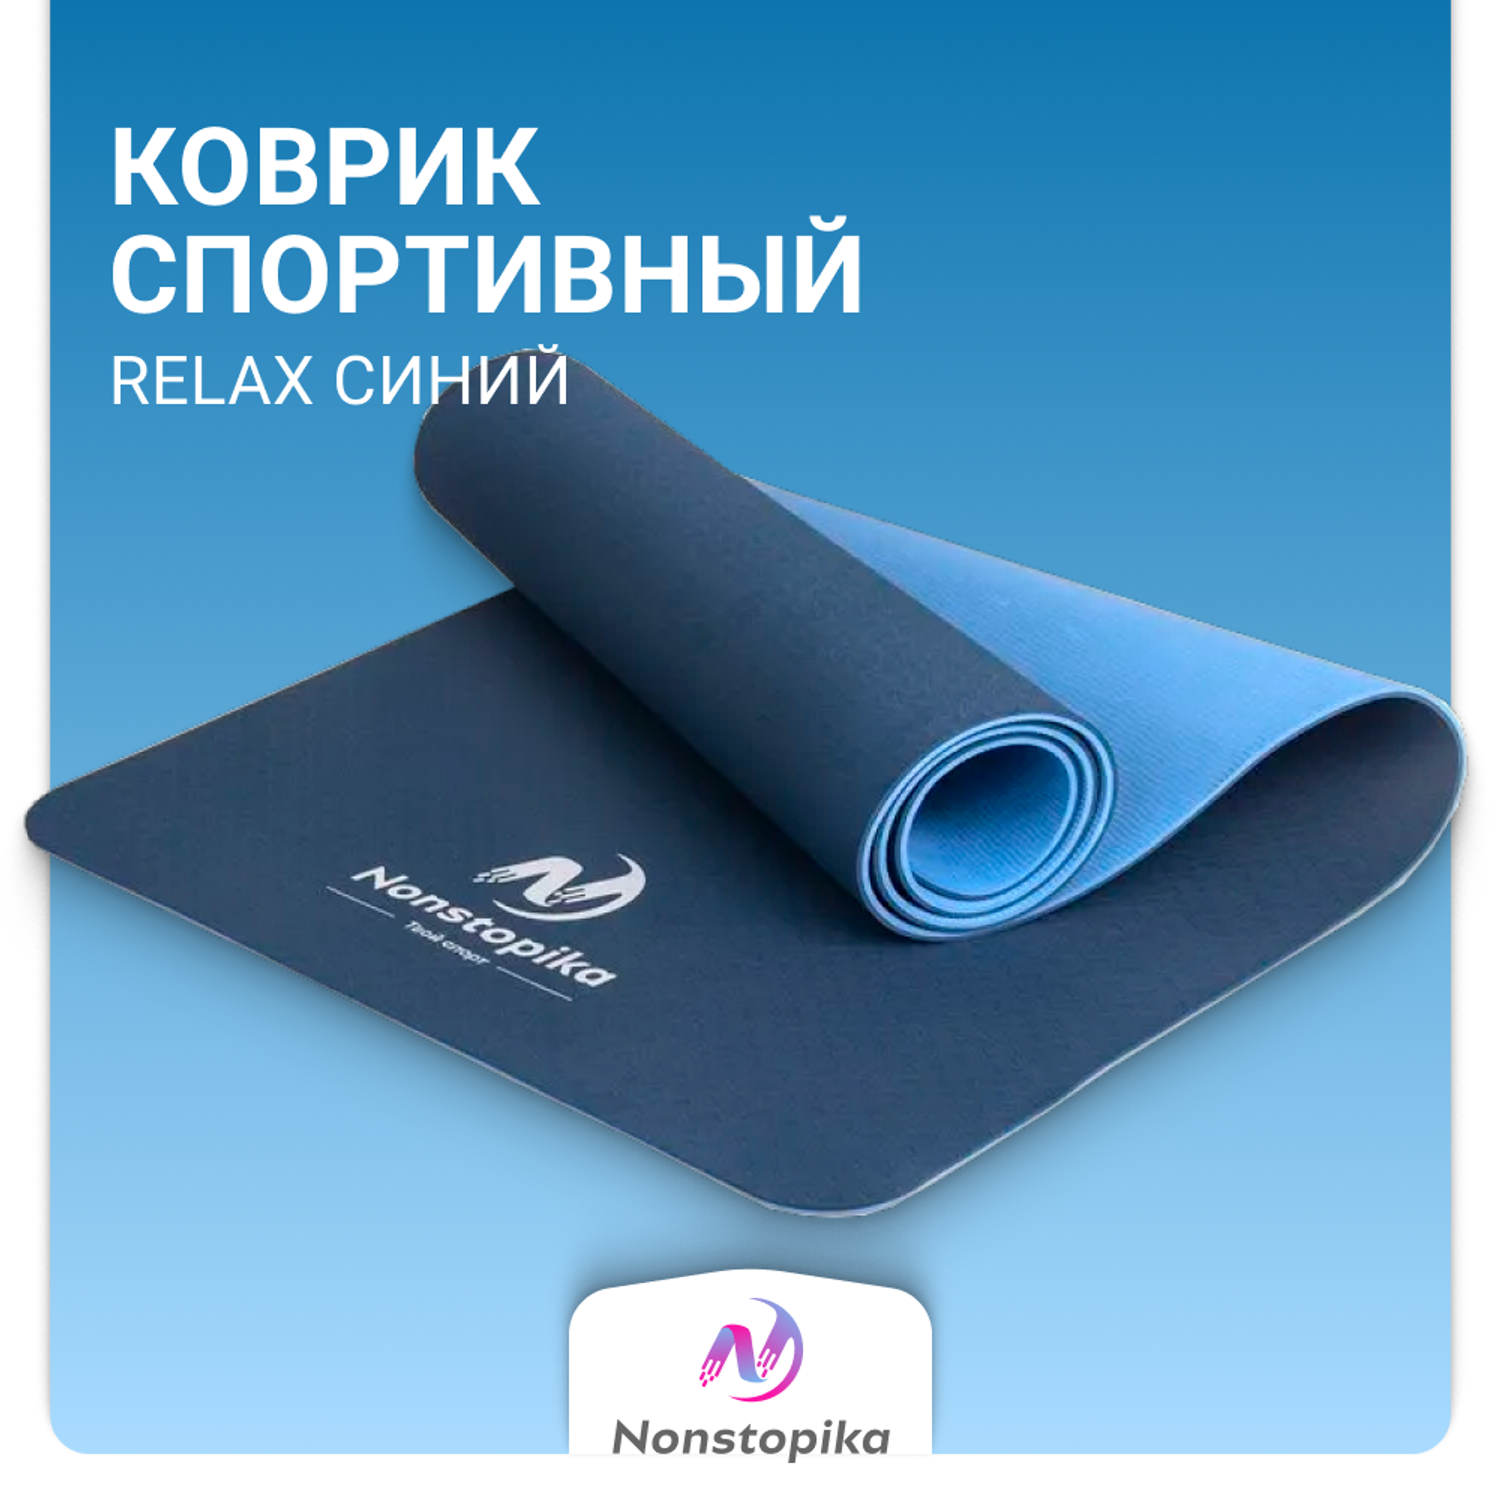 Спортивный коврик ZDK Nonstopika Relax для йоги и пилатеса размер 183х61х0.6см цвет синий 2 стороны - фото 2